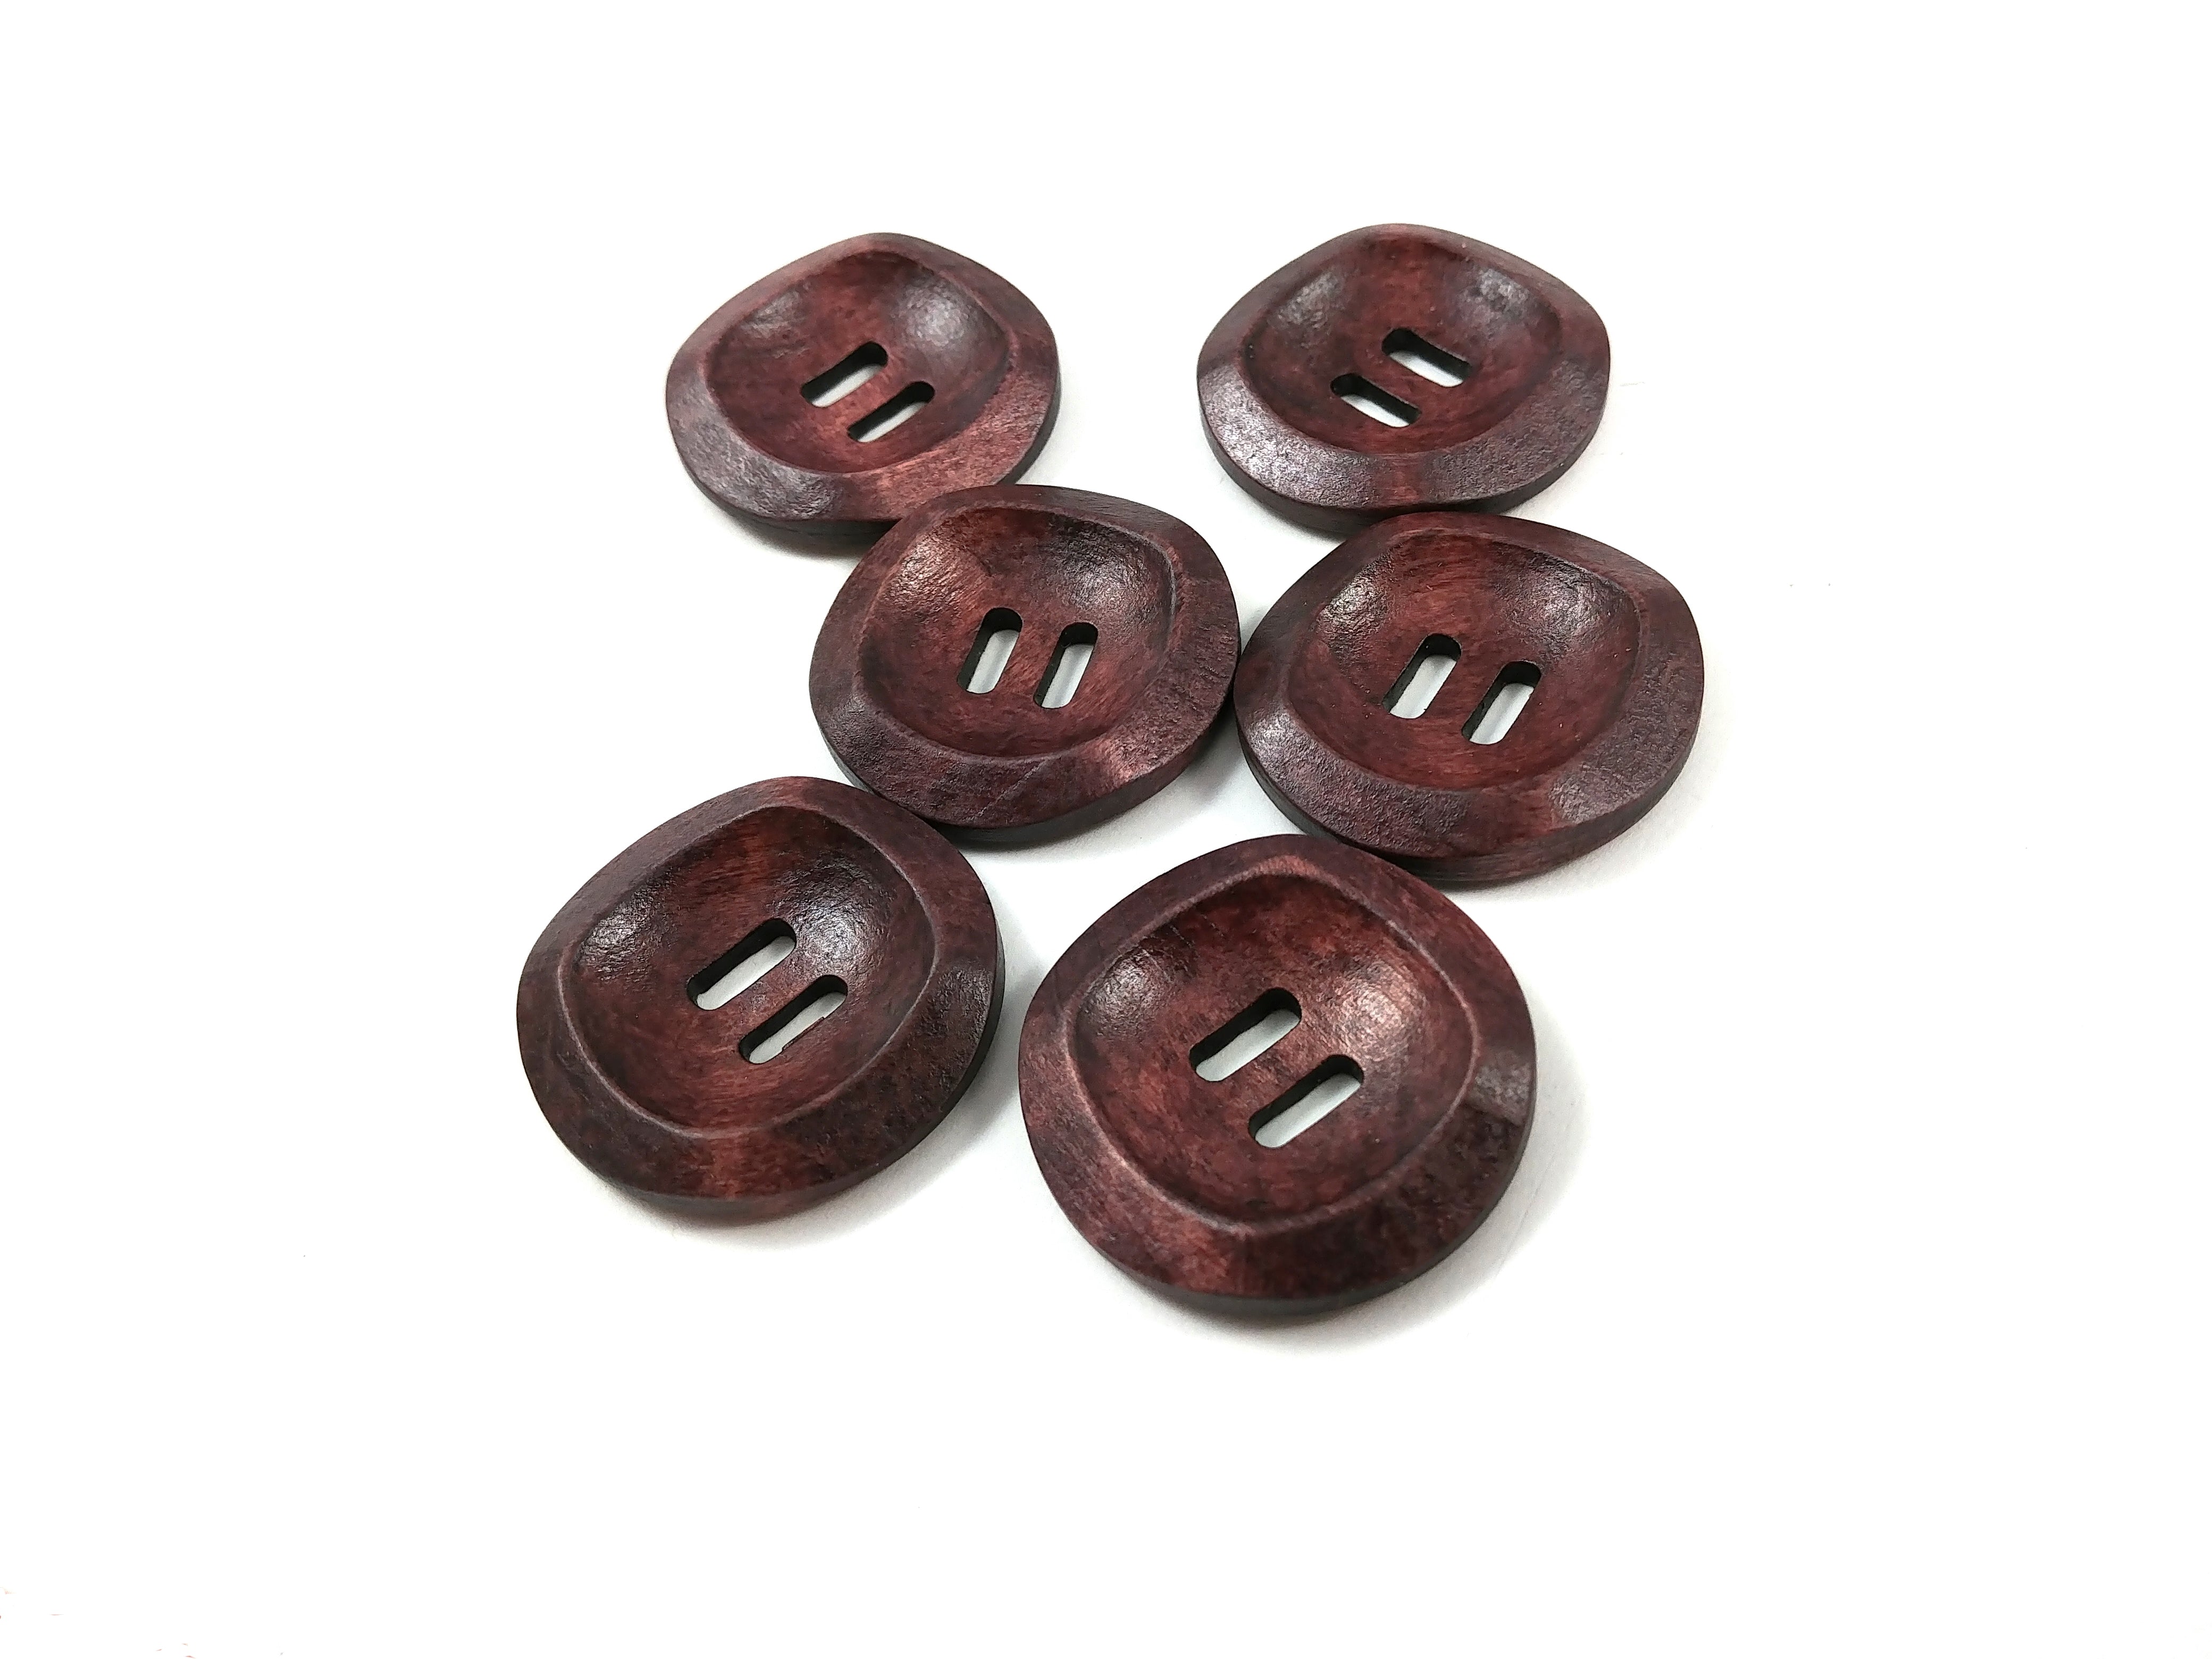 Bouton de bois marron foncé de 3cm - ensemble de 6 boutons en bois naturel